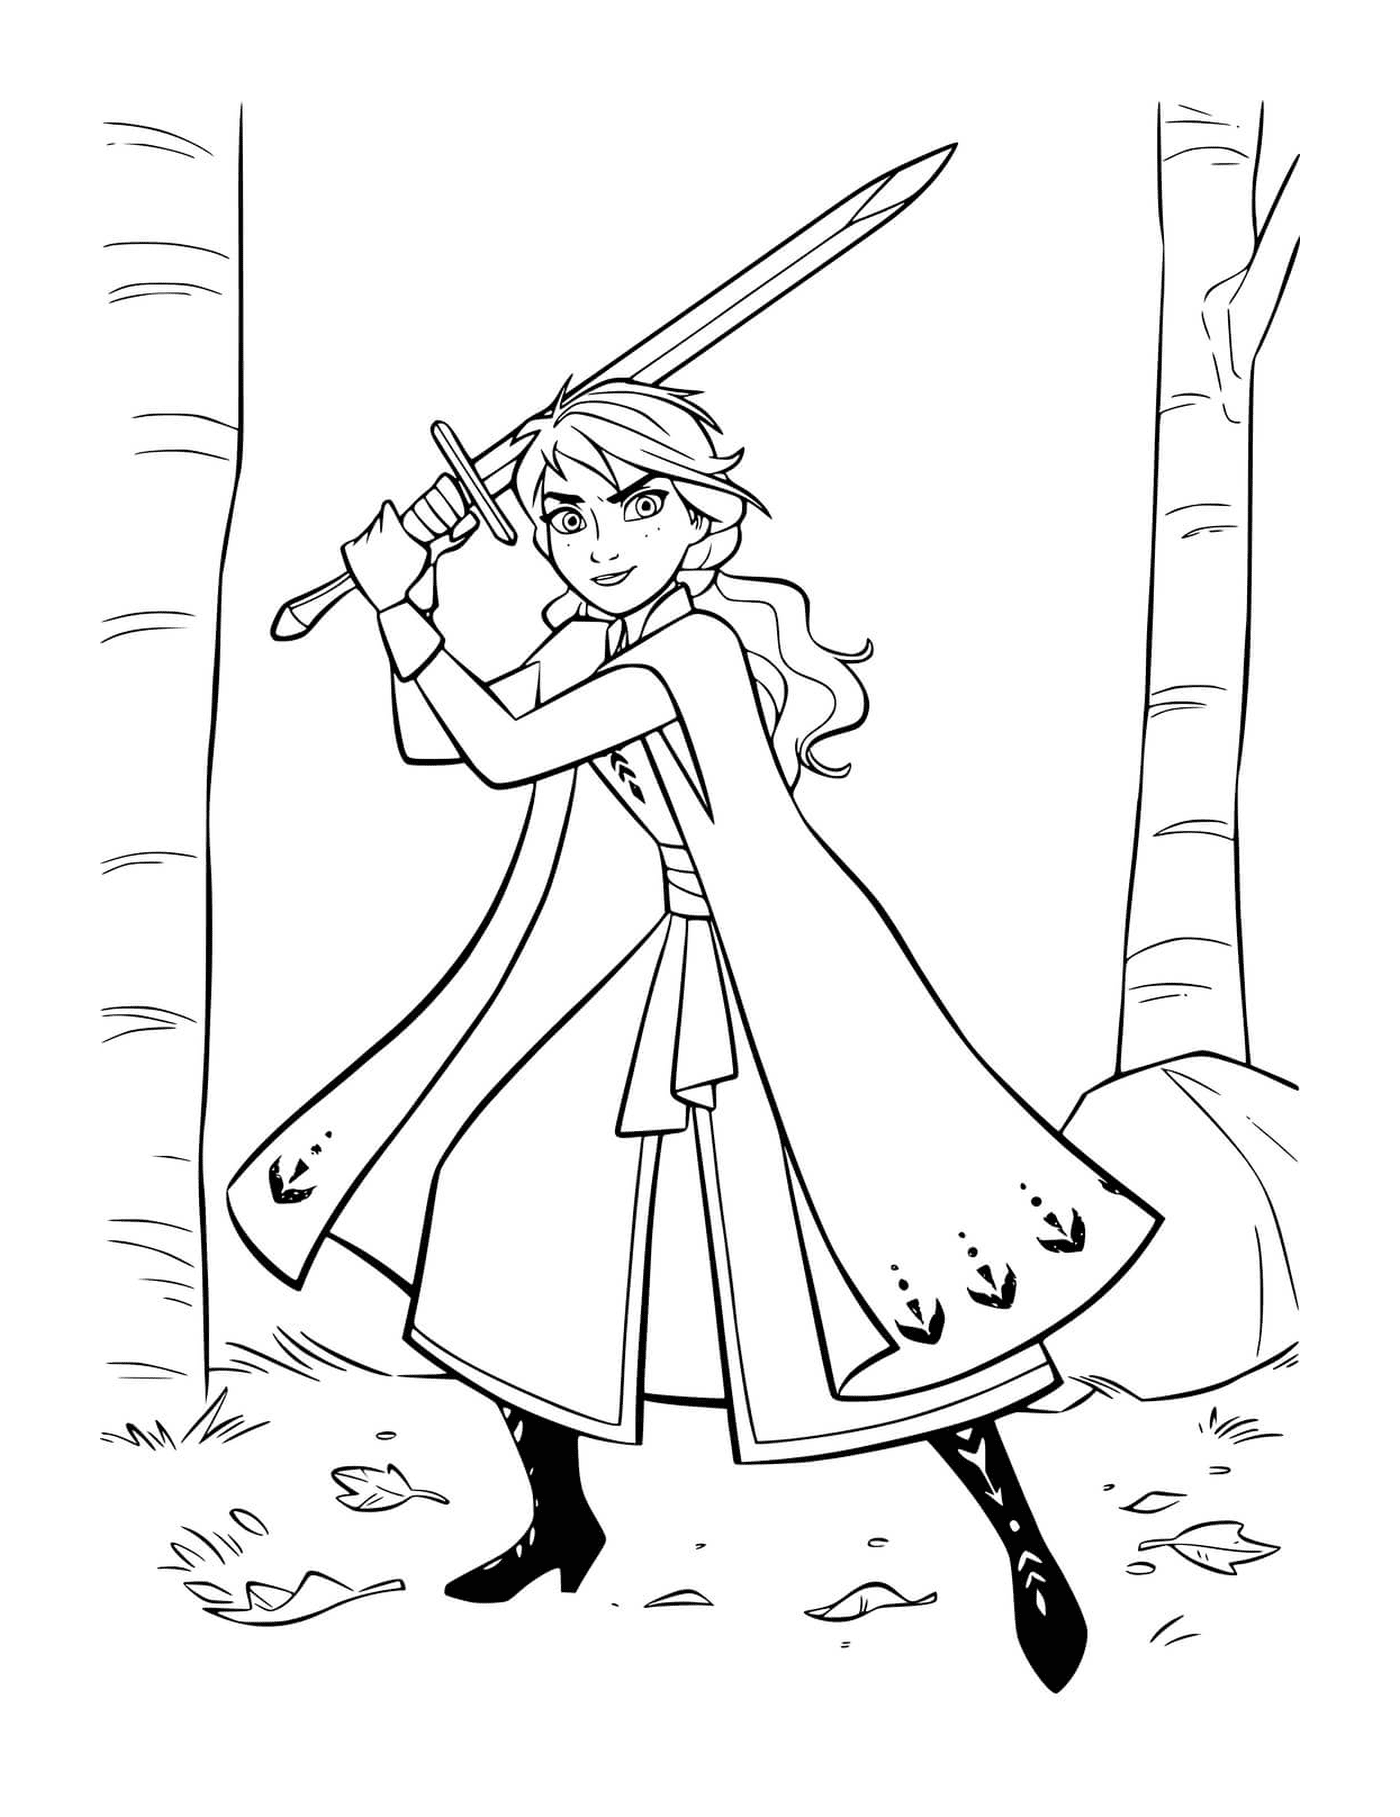  Anna defende reino com espada 